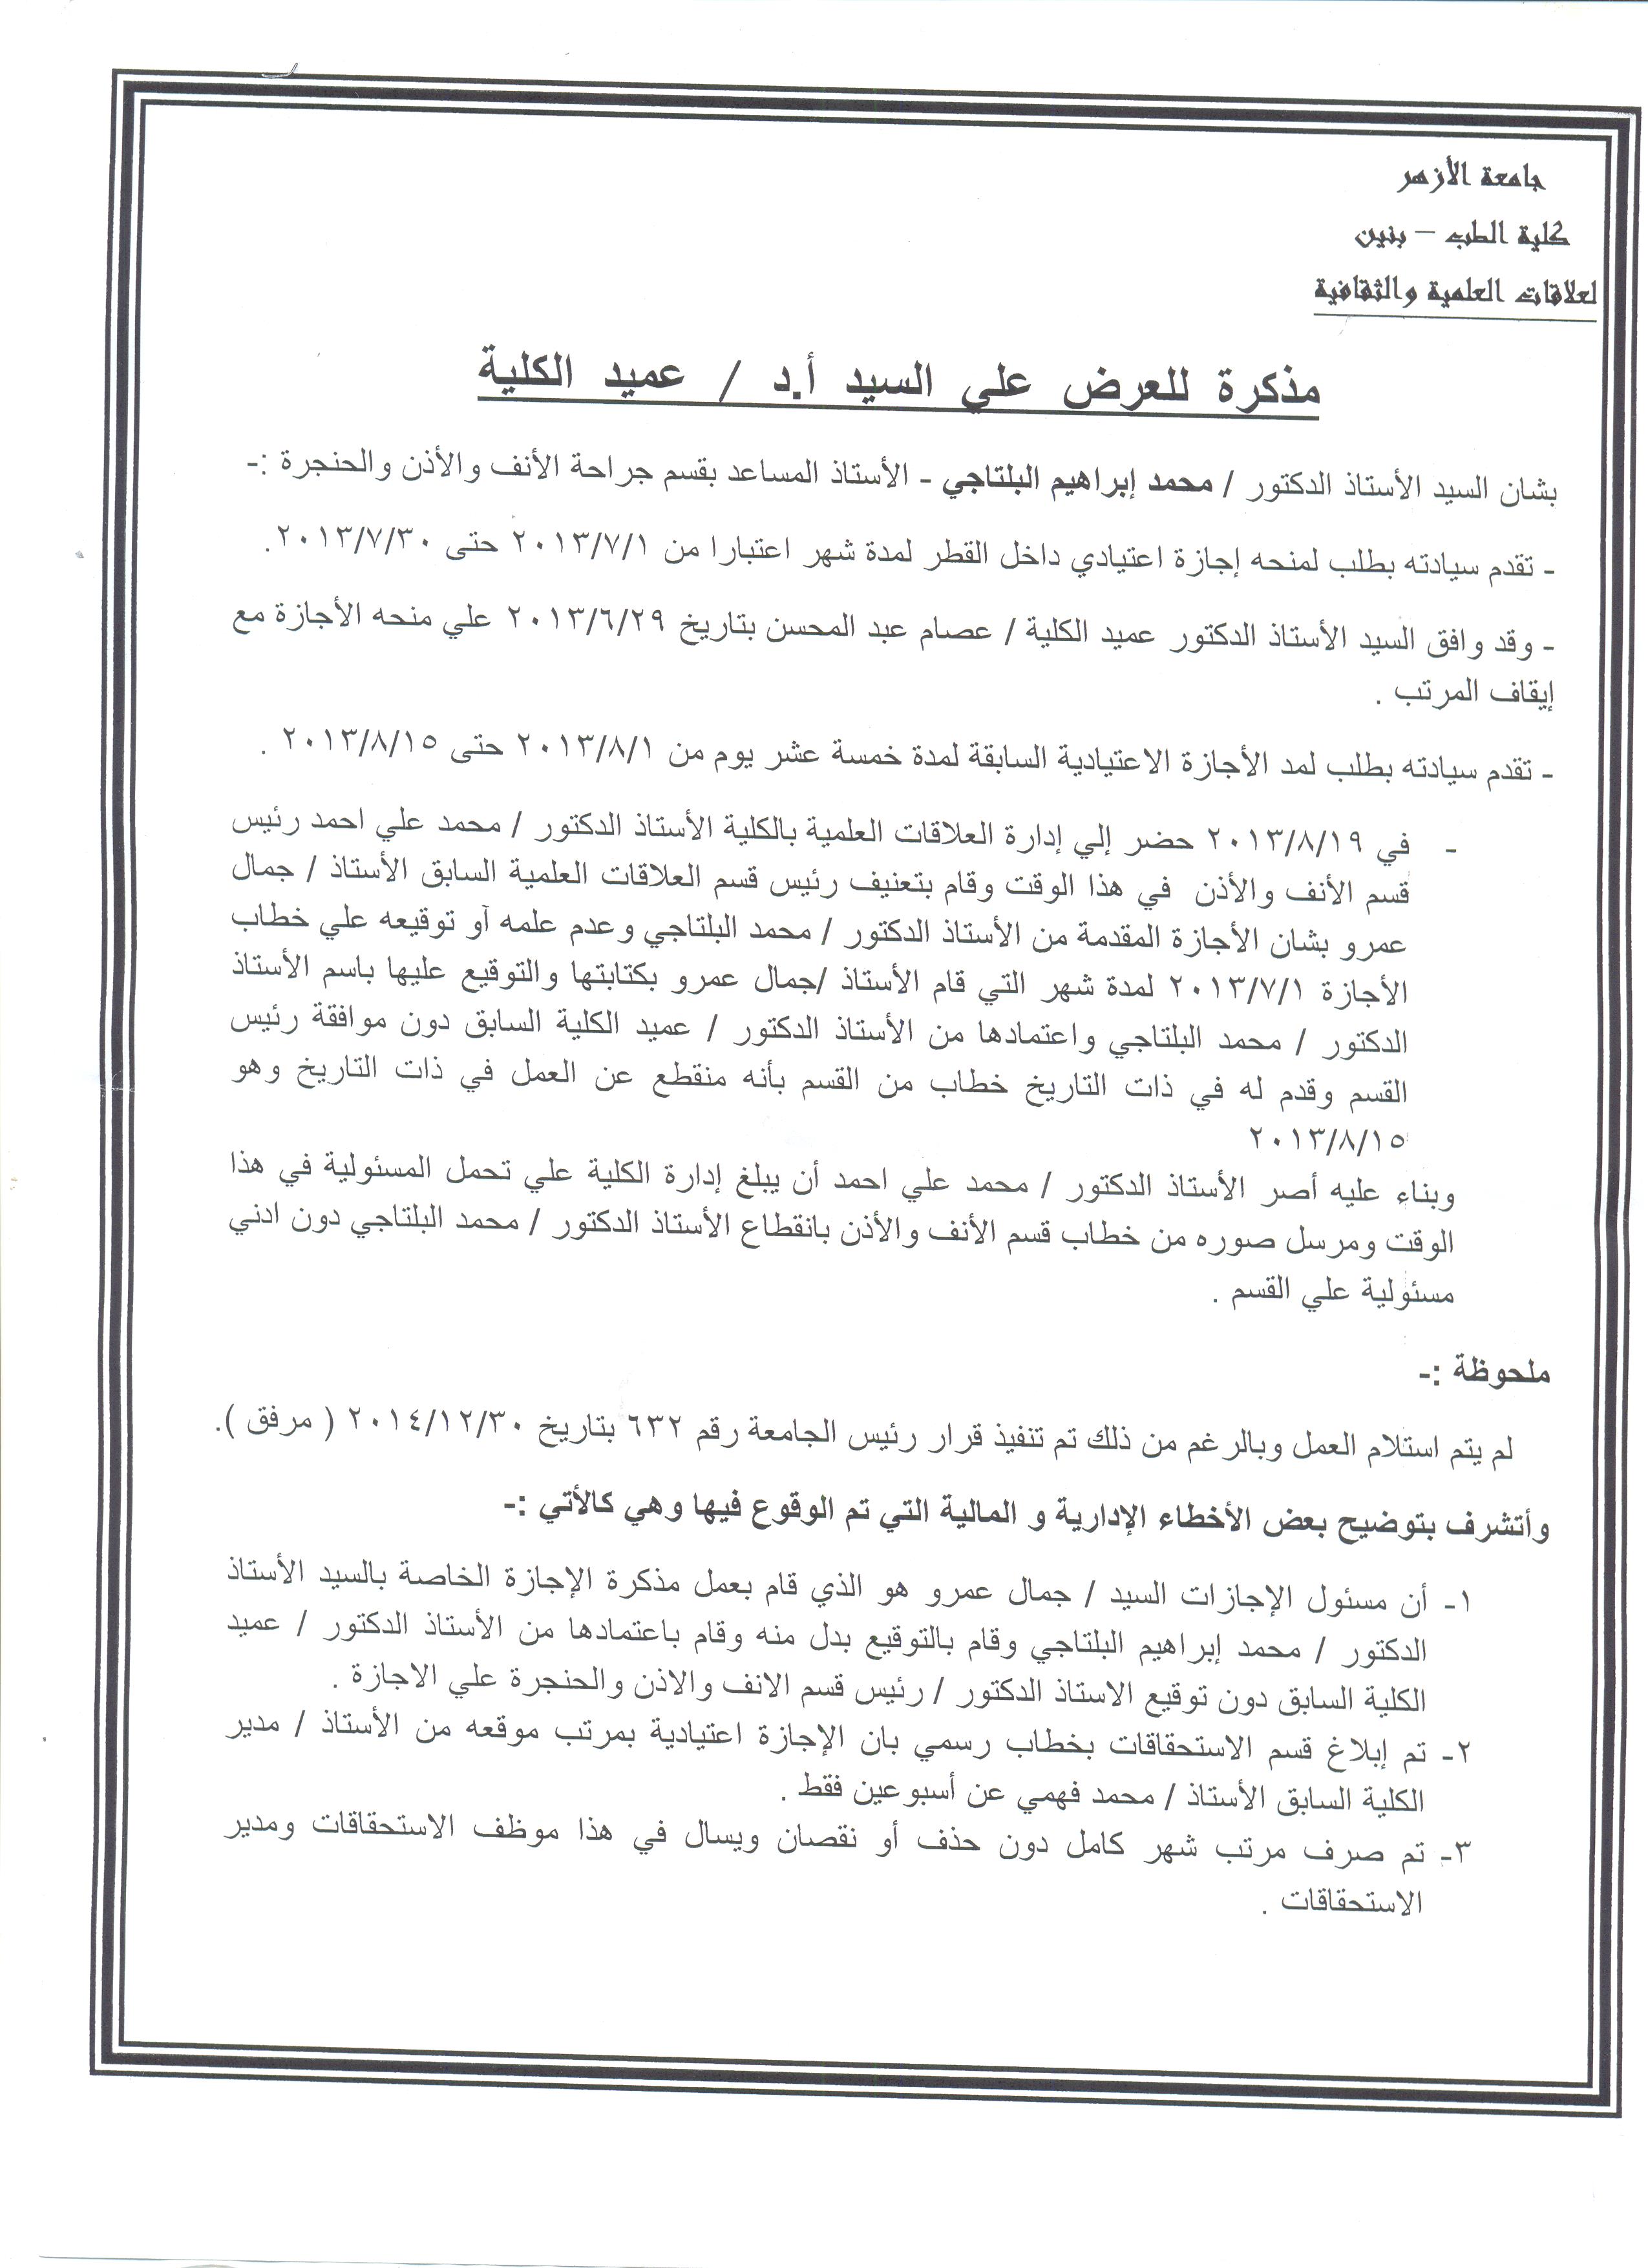  مذكرة توضح مدة تغيب القيادى الإخوانى محمد البلتاجى عن عمله من 1 يوليو عام 2013 -اليوم السابع -5 -2015